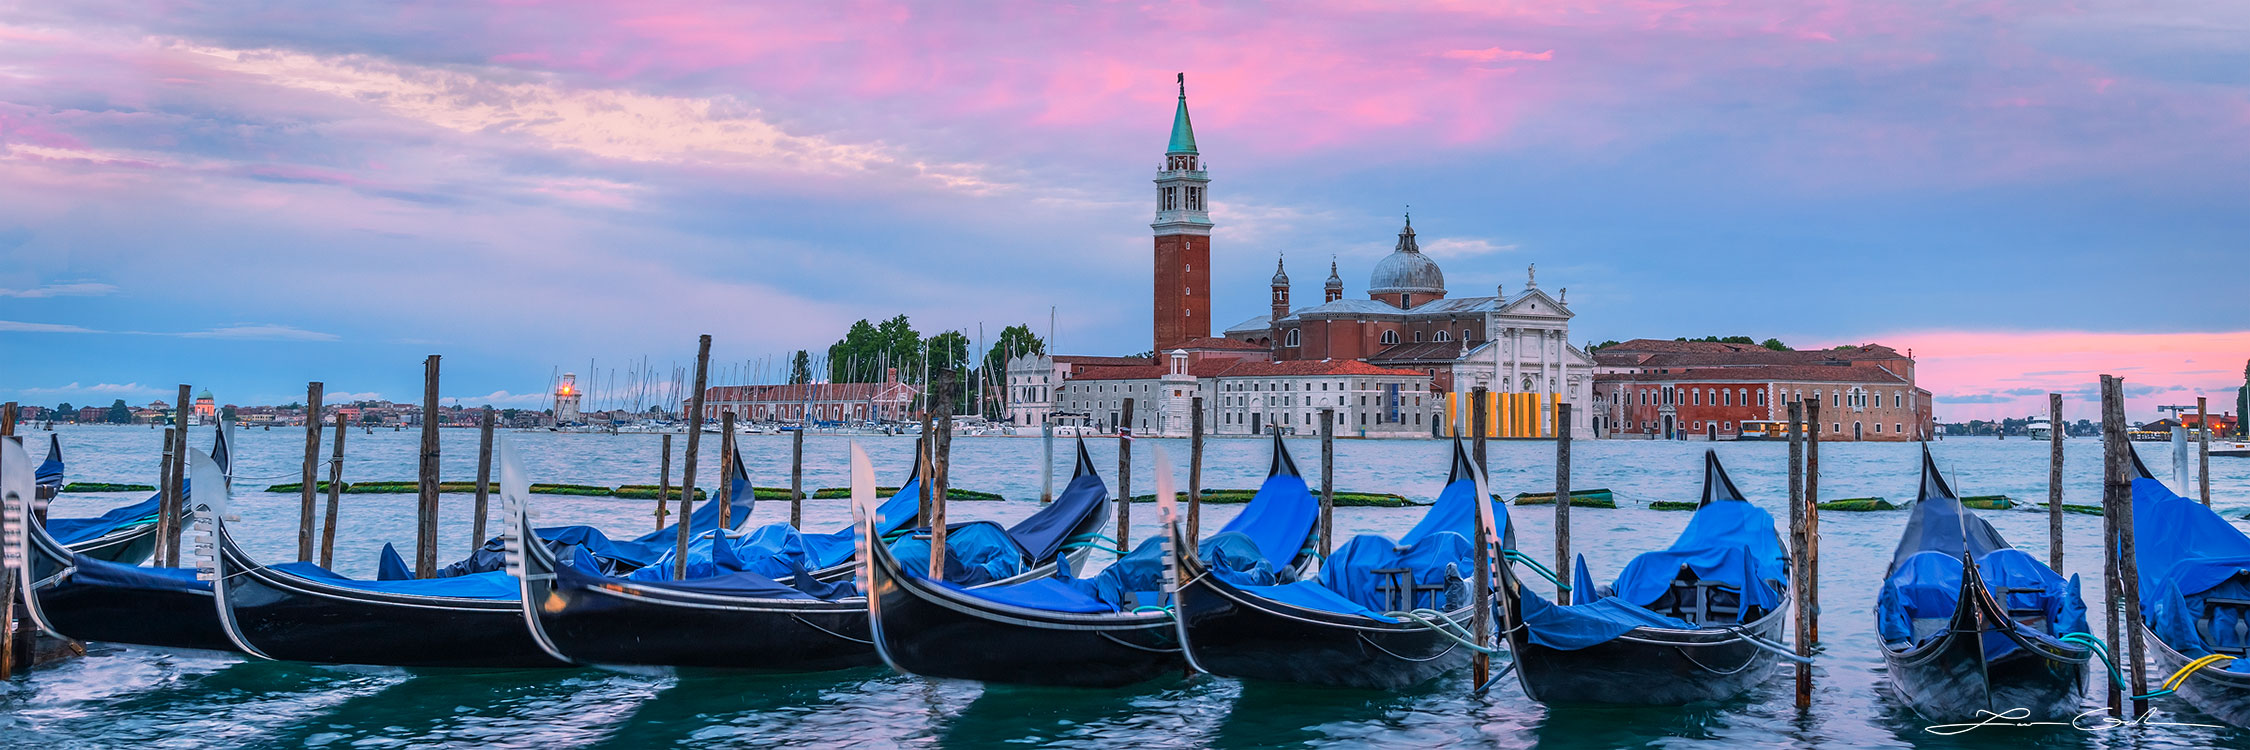 A row of gondola boats near San Marco square in Venice, Italy at sunset and the Church of San Giorgio Maggiore (Basilica di San Giorgio Maggiore) - Gintchin Fine Art